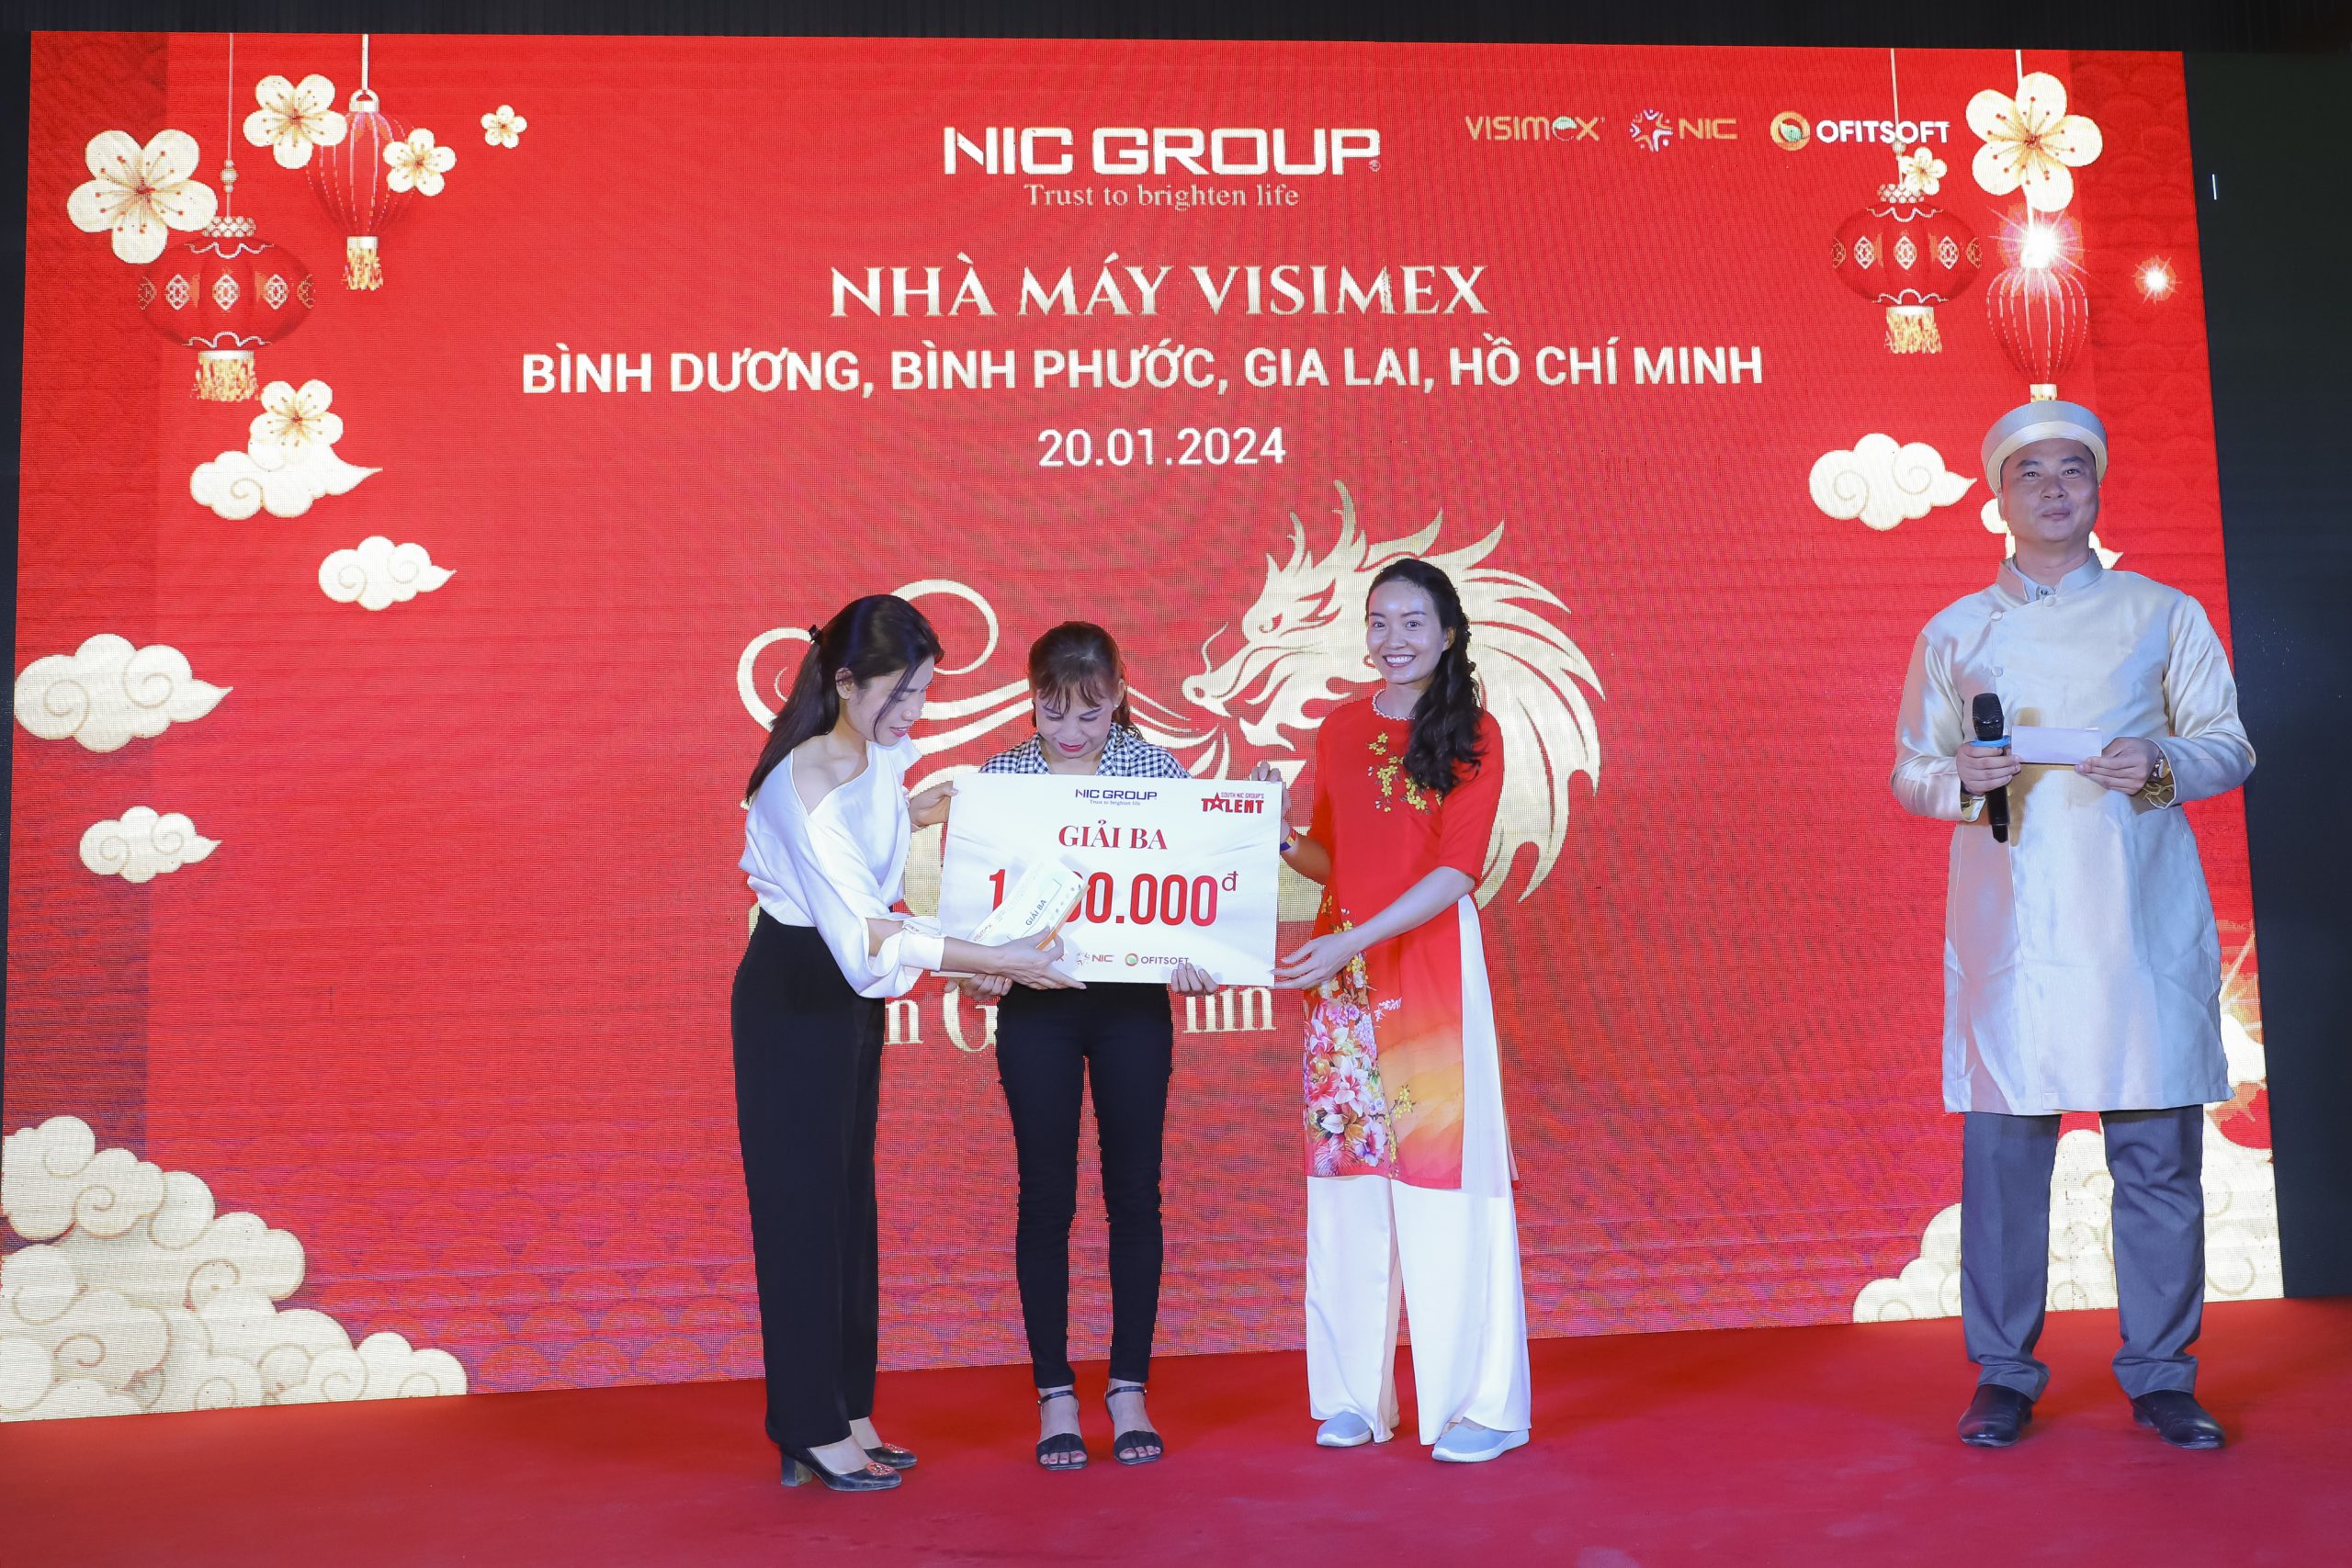 Third Prize: Binh Duong Factory